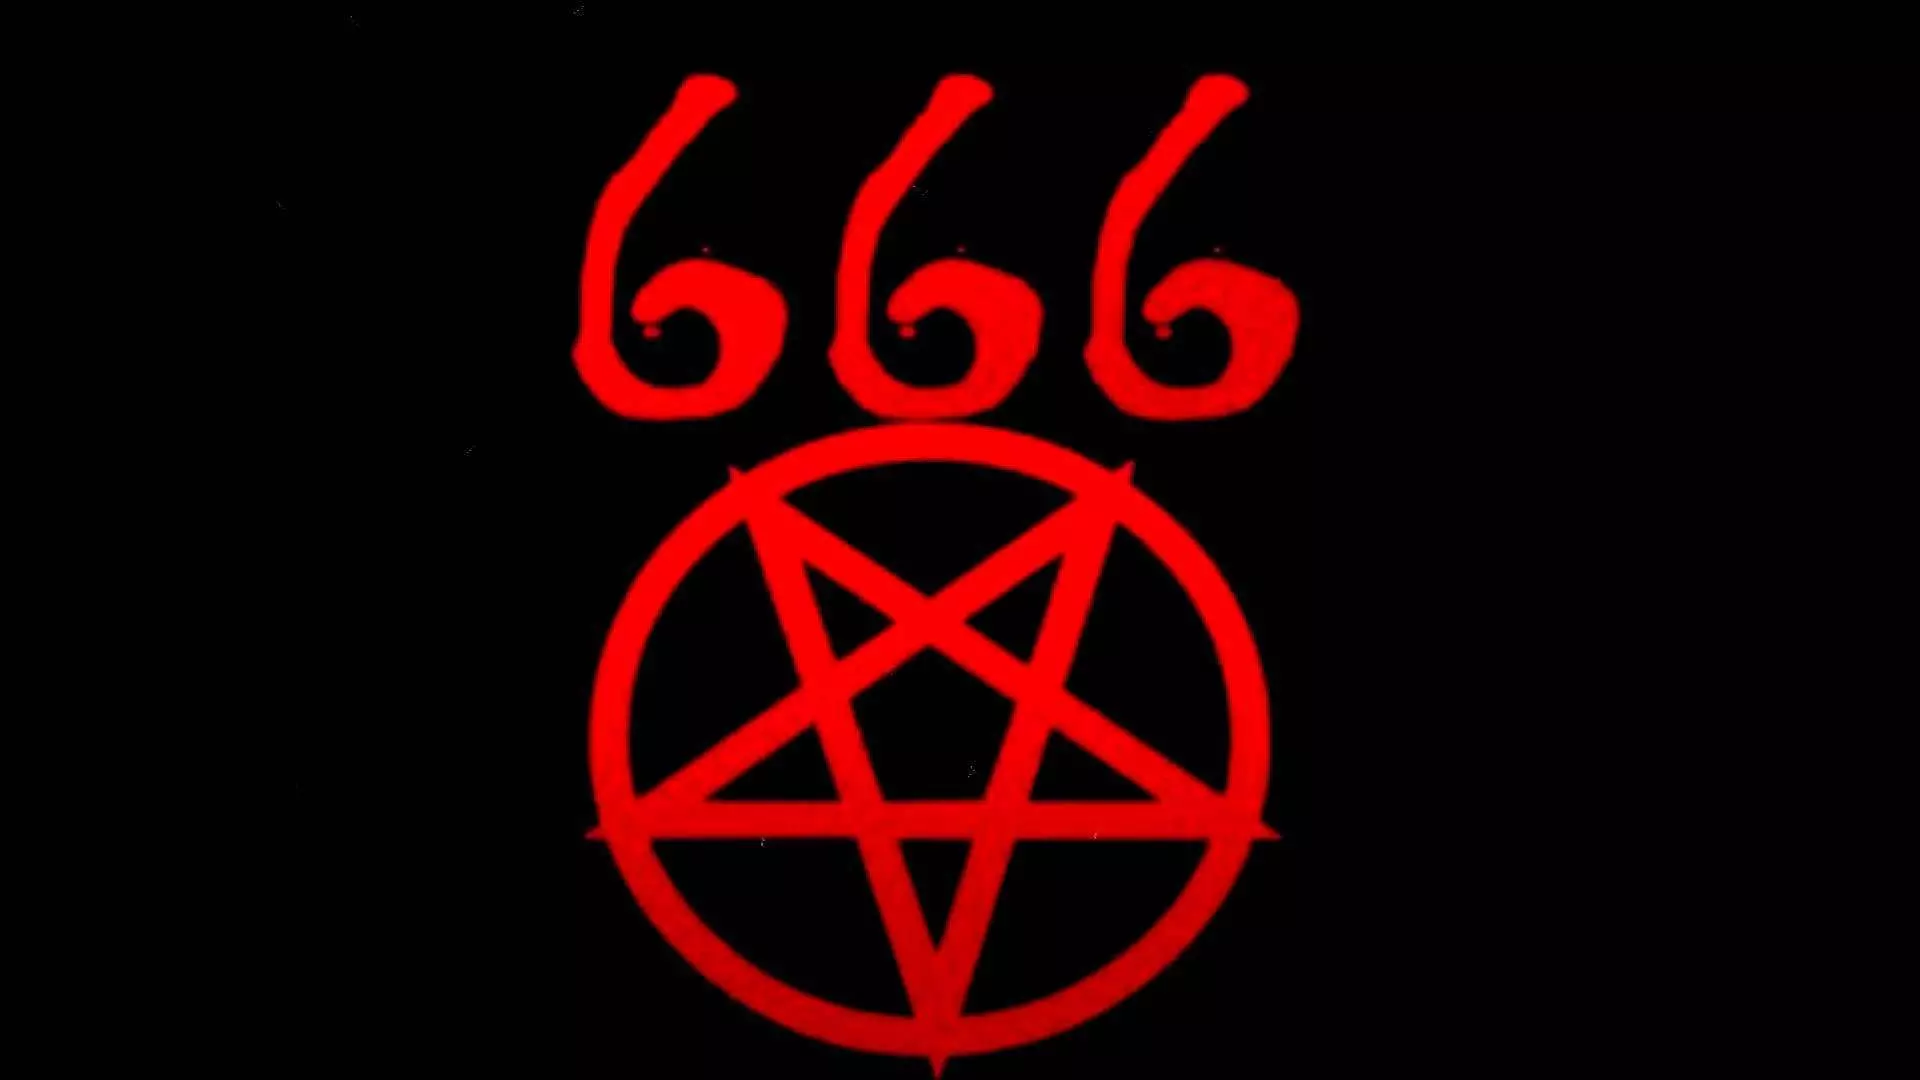 666 zikutanthauza chiyani